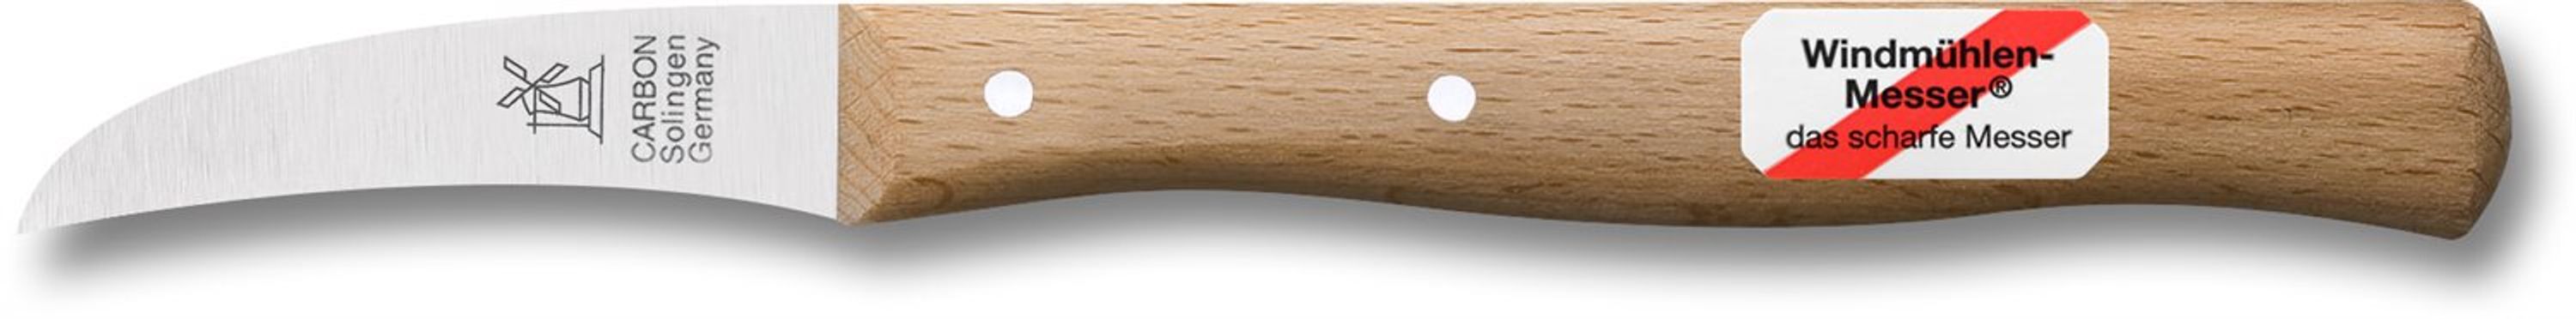 Windmühlenmesser Vogelschnabel Carbon Schälmesser, gebogene Klinge, mit Griff oval, nicht rostfrei Rotbuche